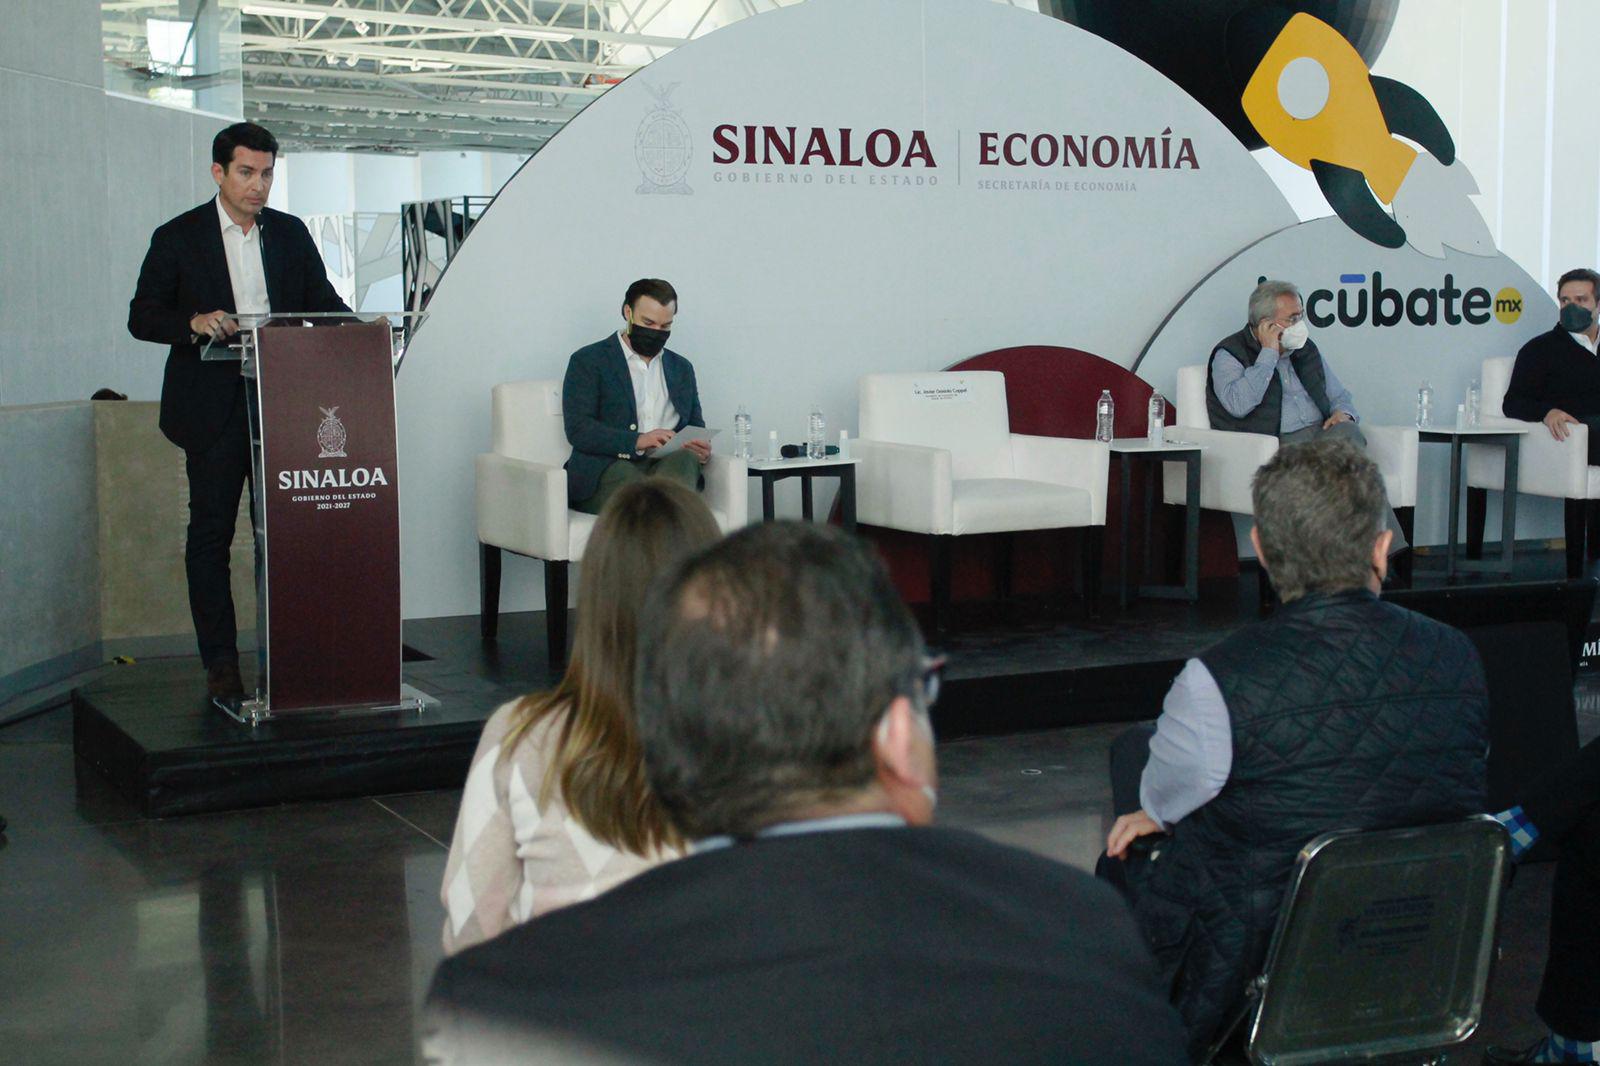 $!Presenta Gobierno de Sinaloa plataforma IncúbateMx para emprendedores, micro, pequeñas y medianas empresas